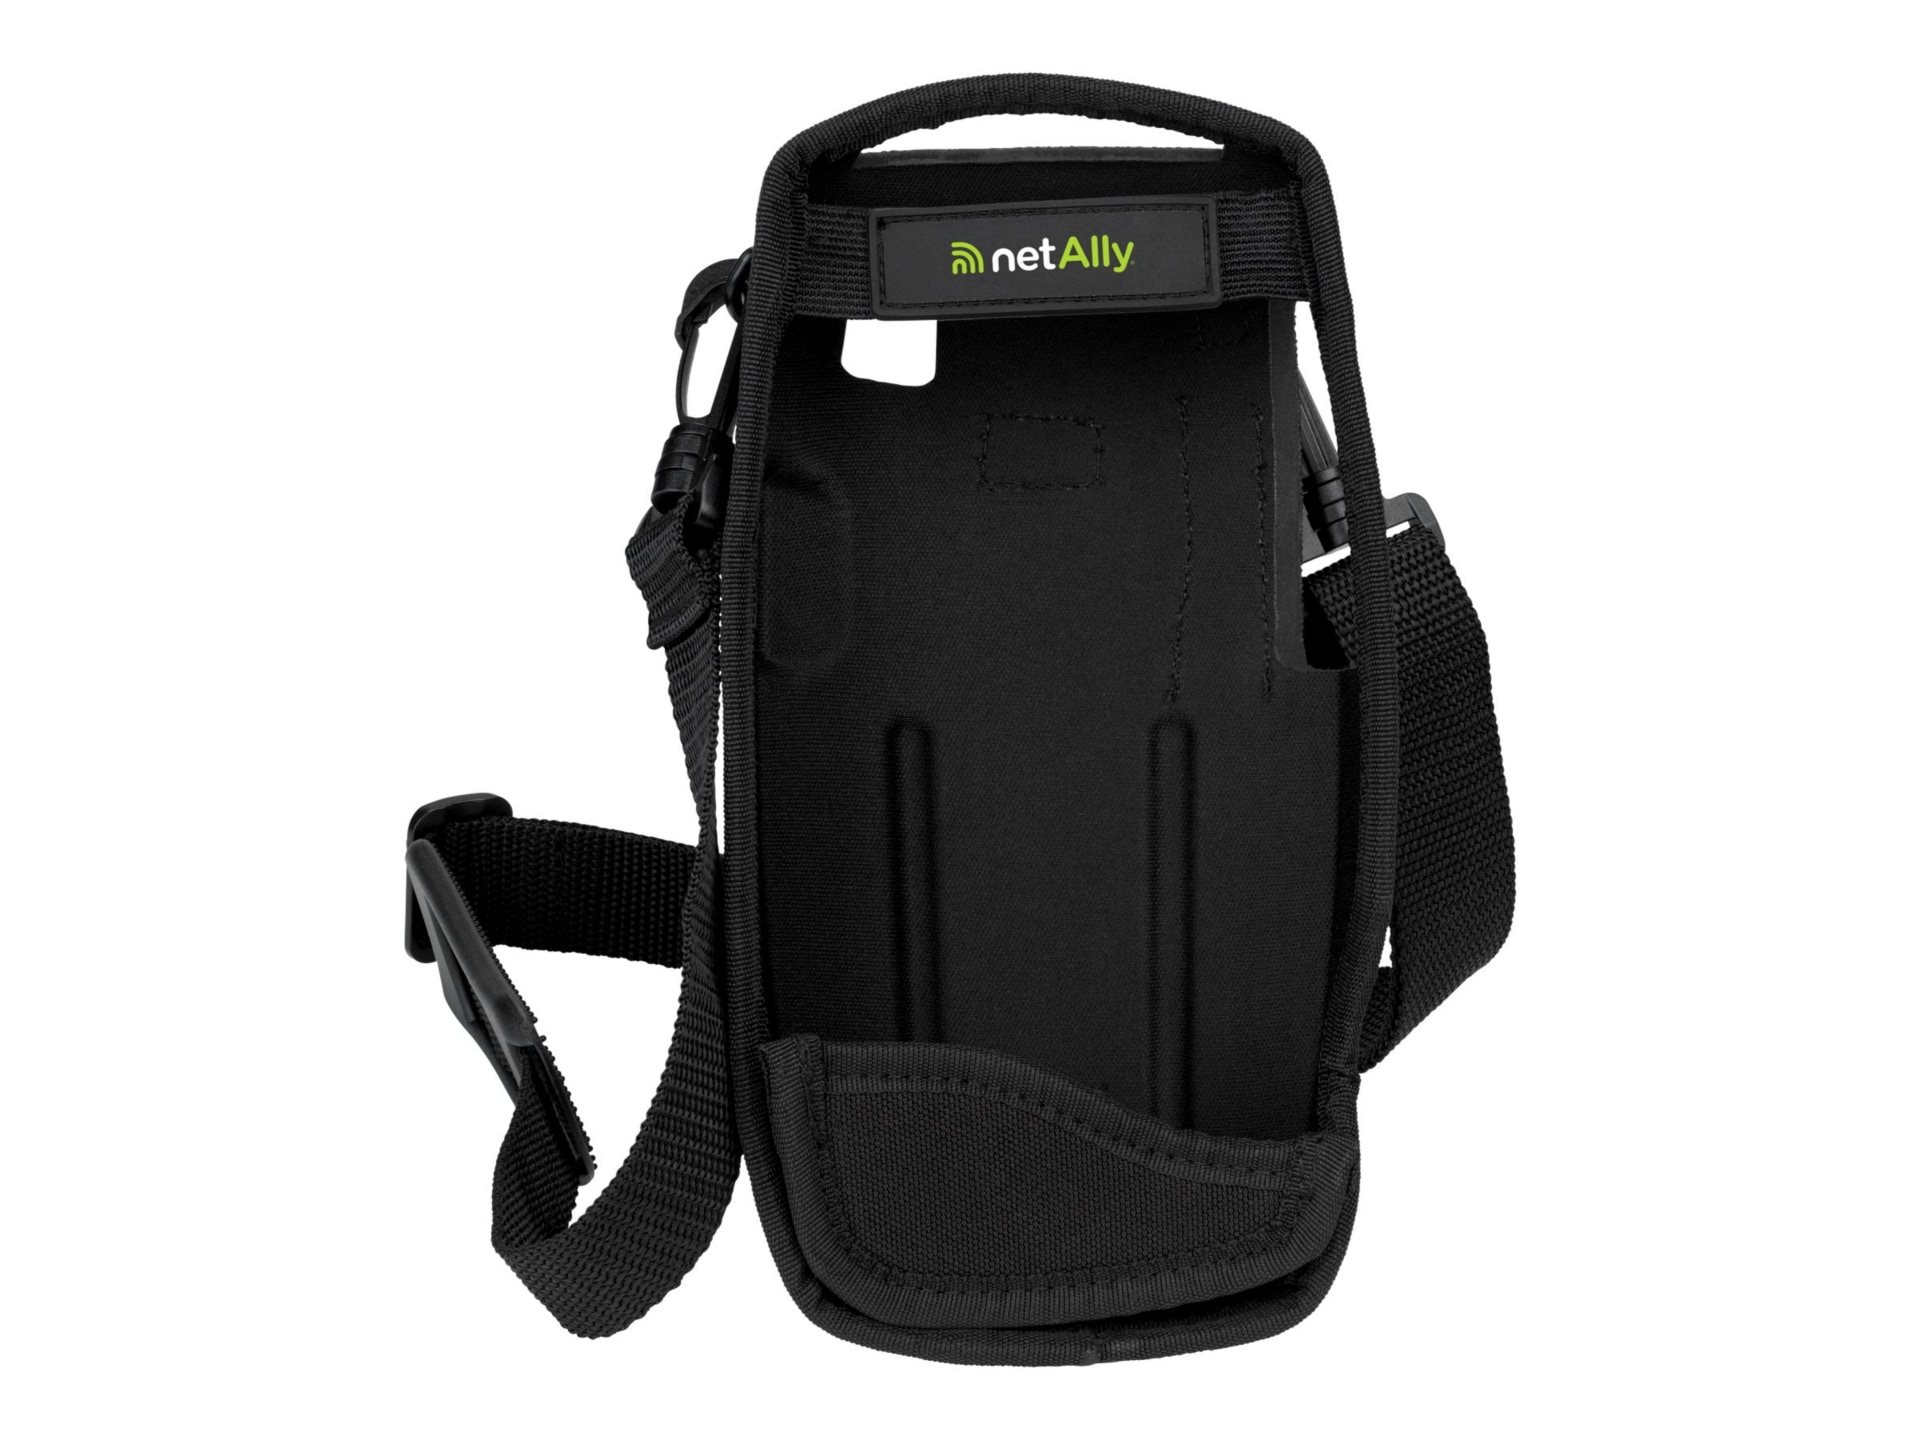 NetAlly Holster - holster bag for network testing devices